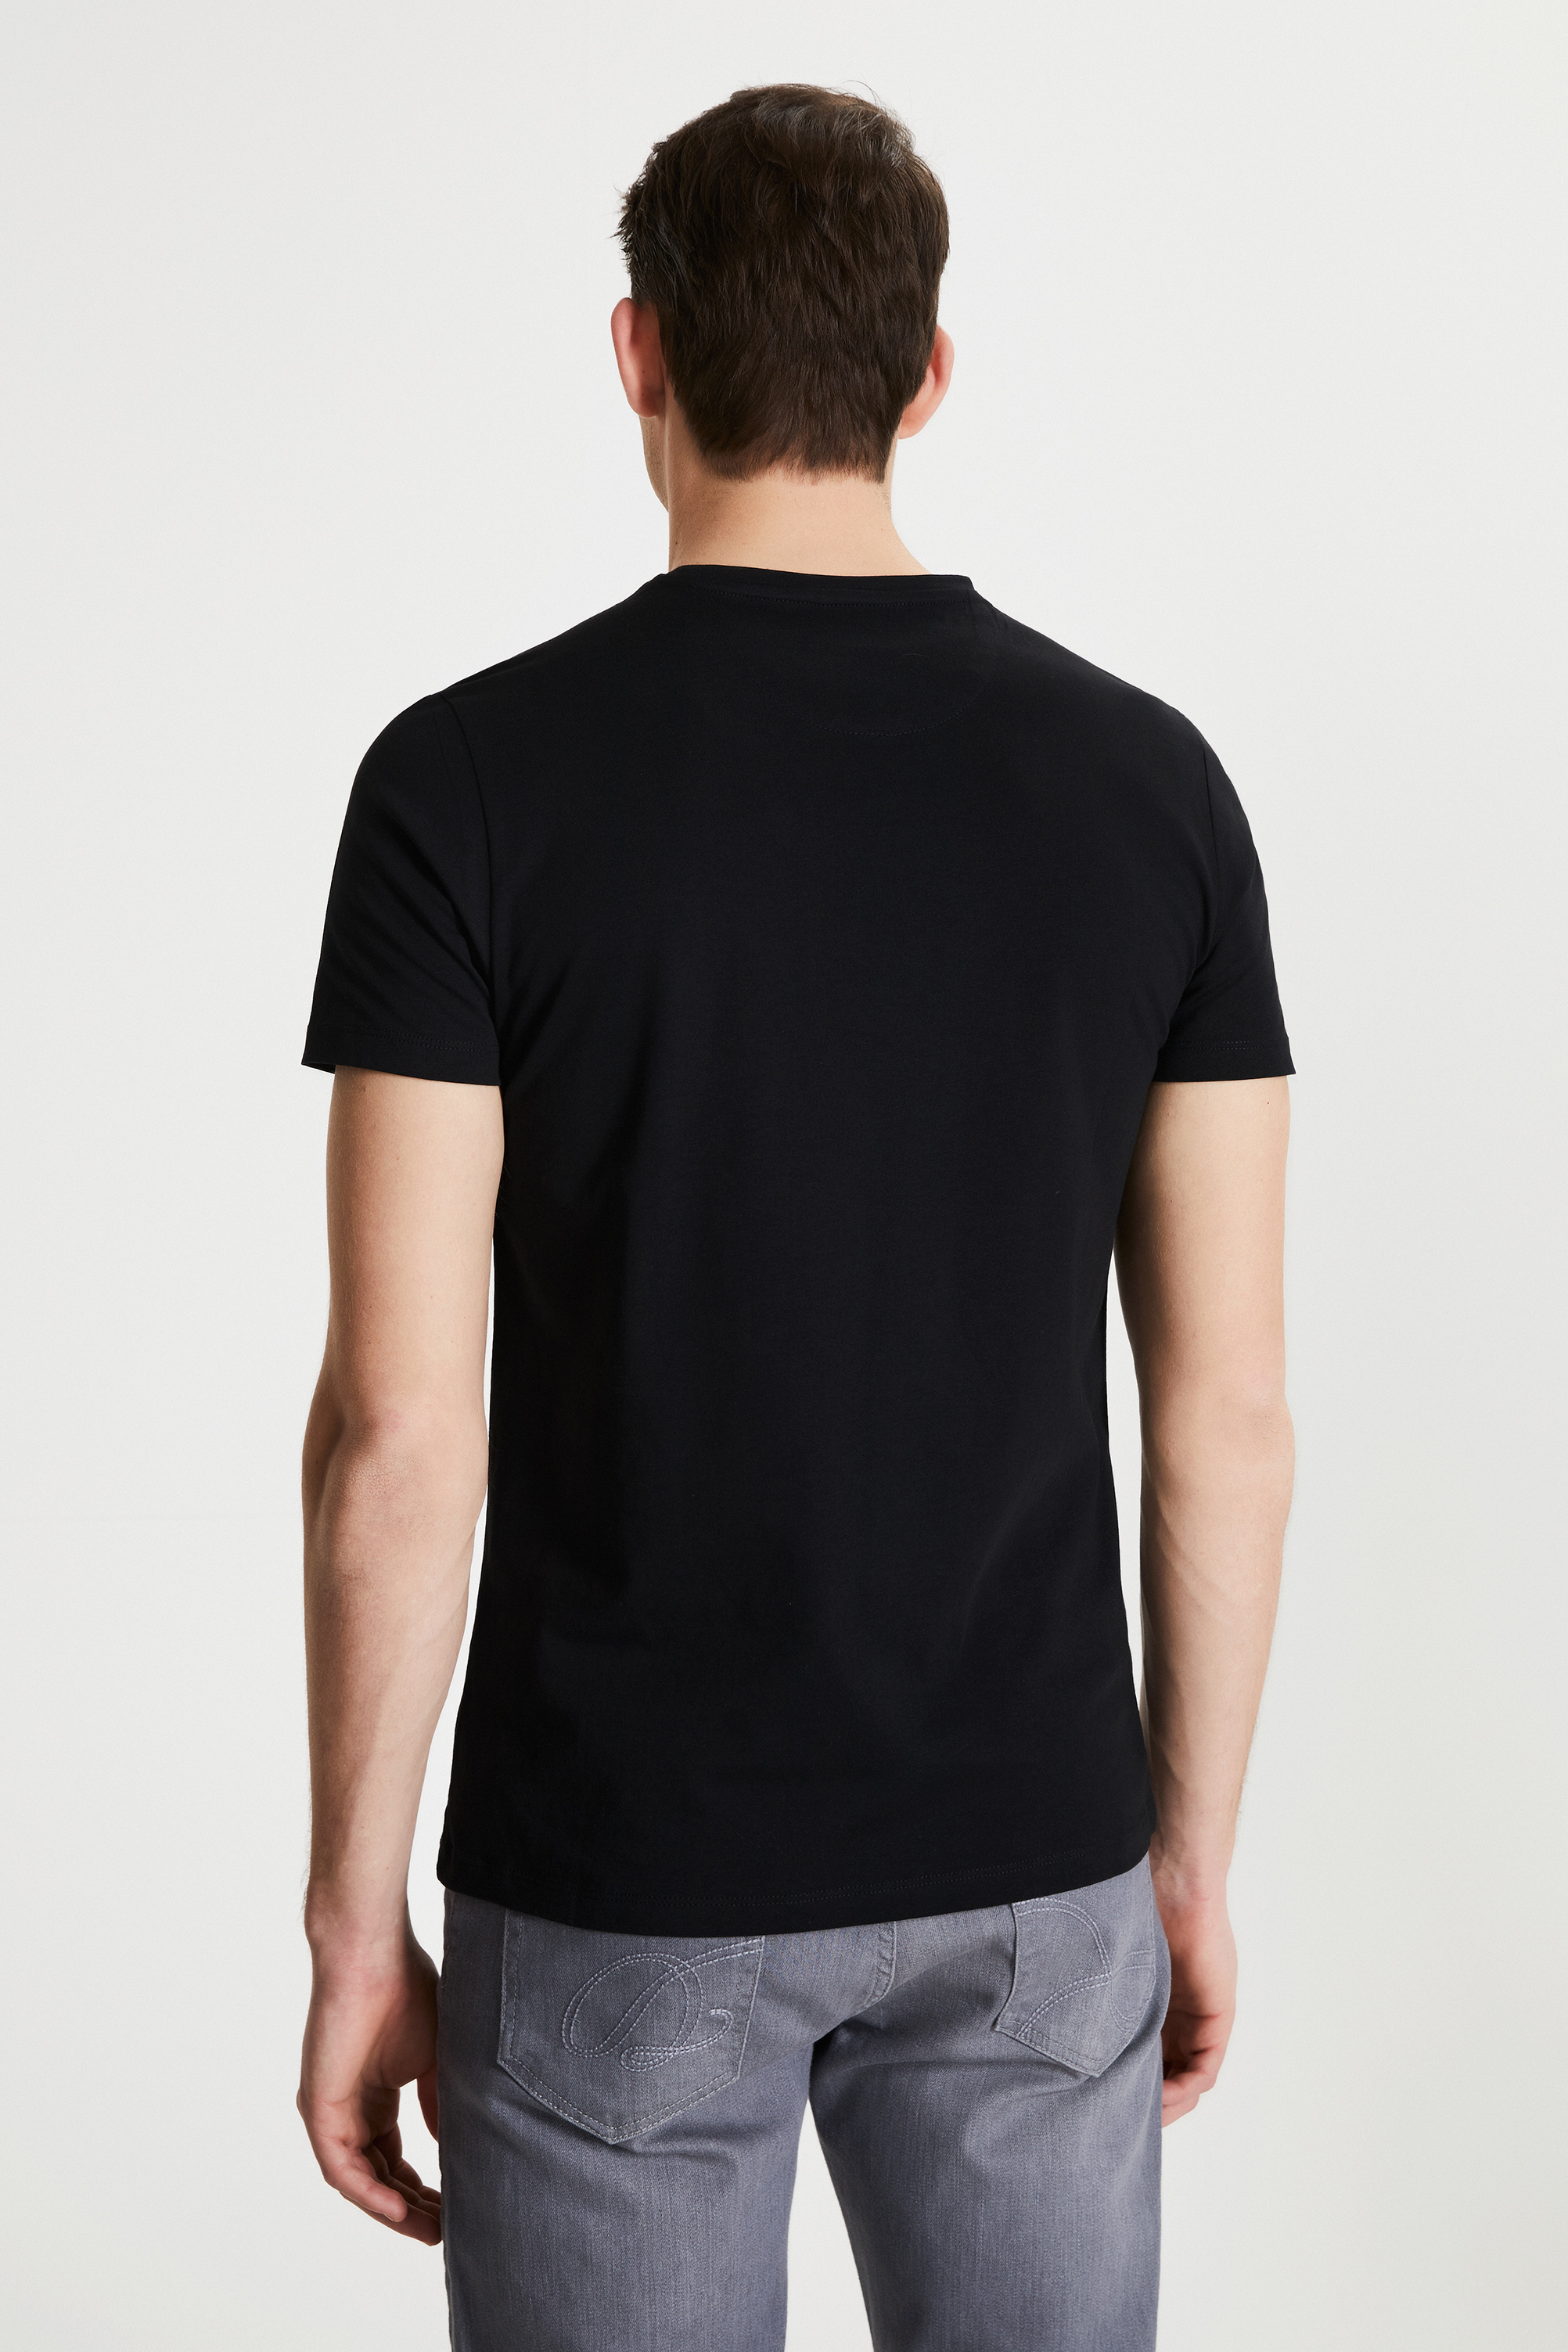 Damat Tween Damat Siyah Çizgili Baskılı T-shirt. 5